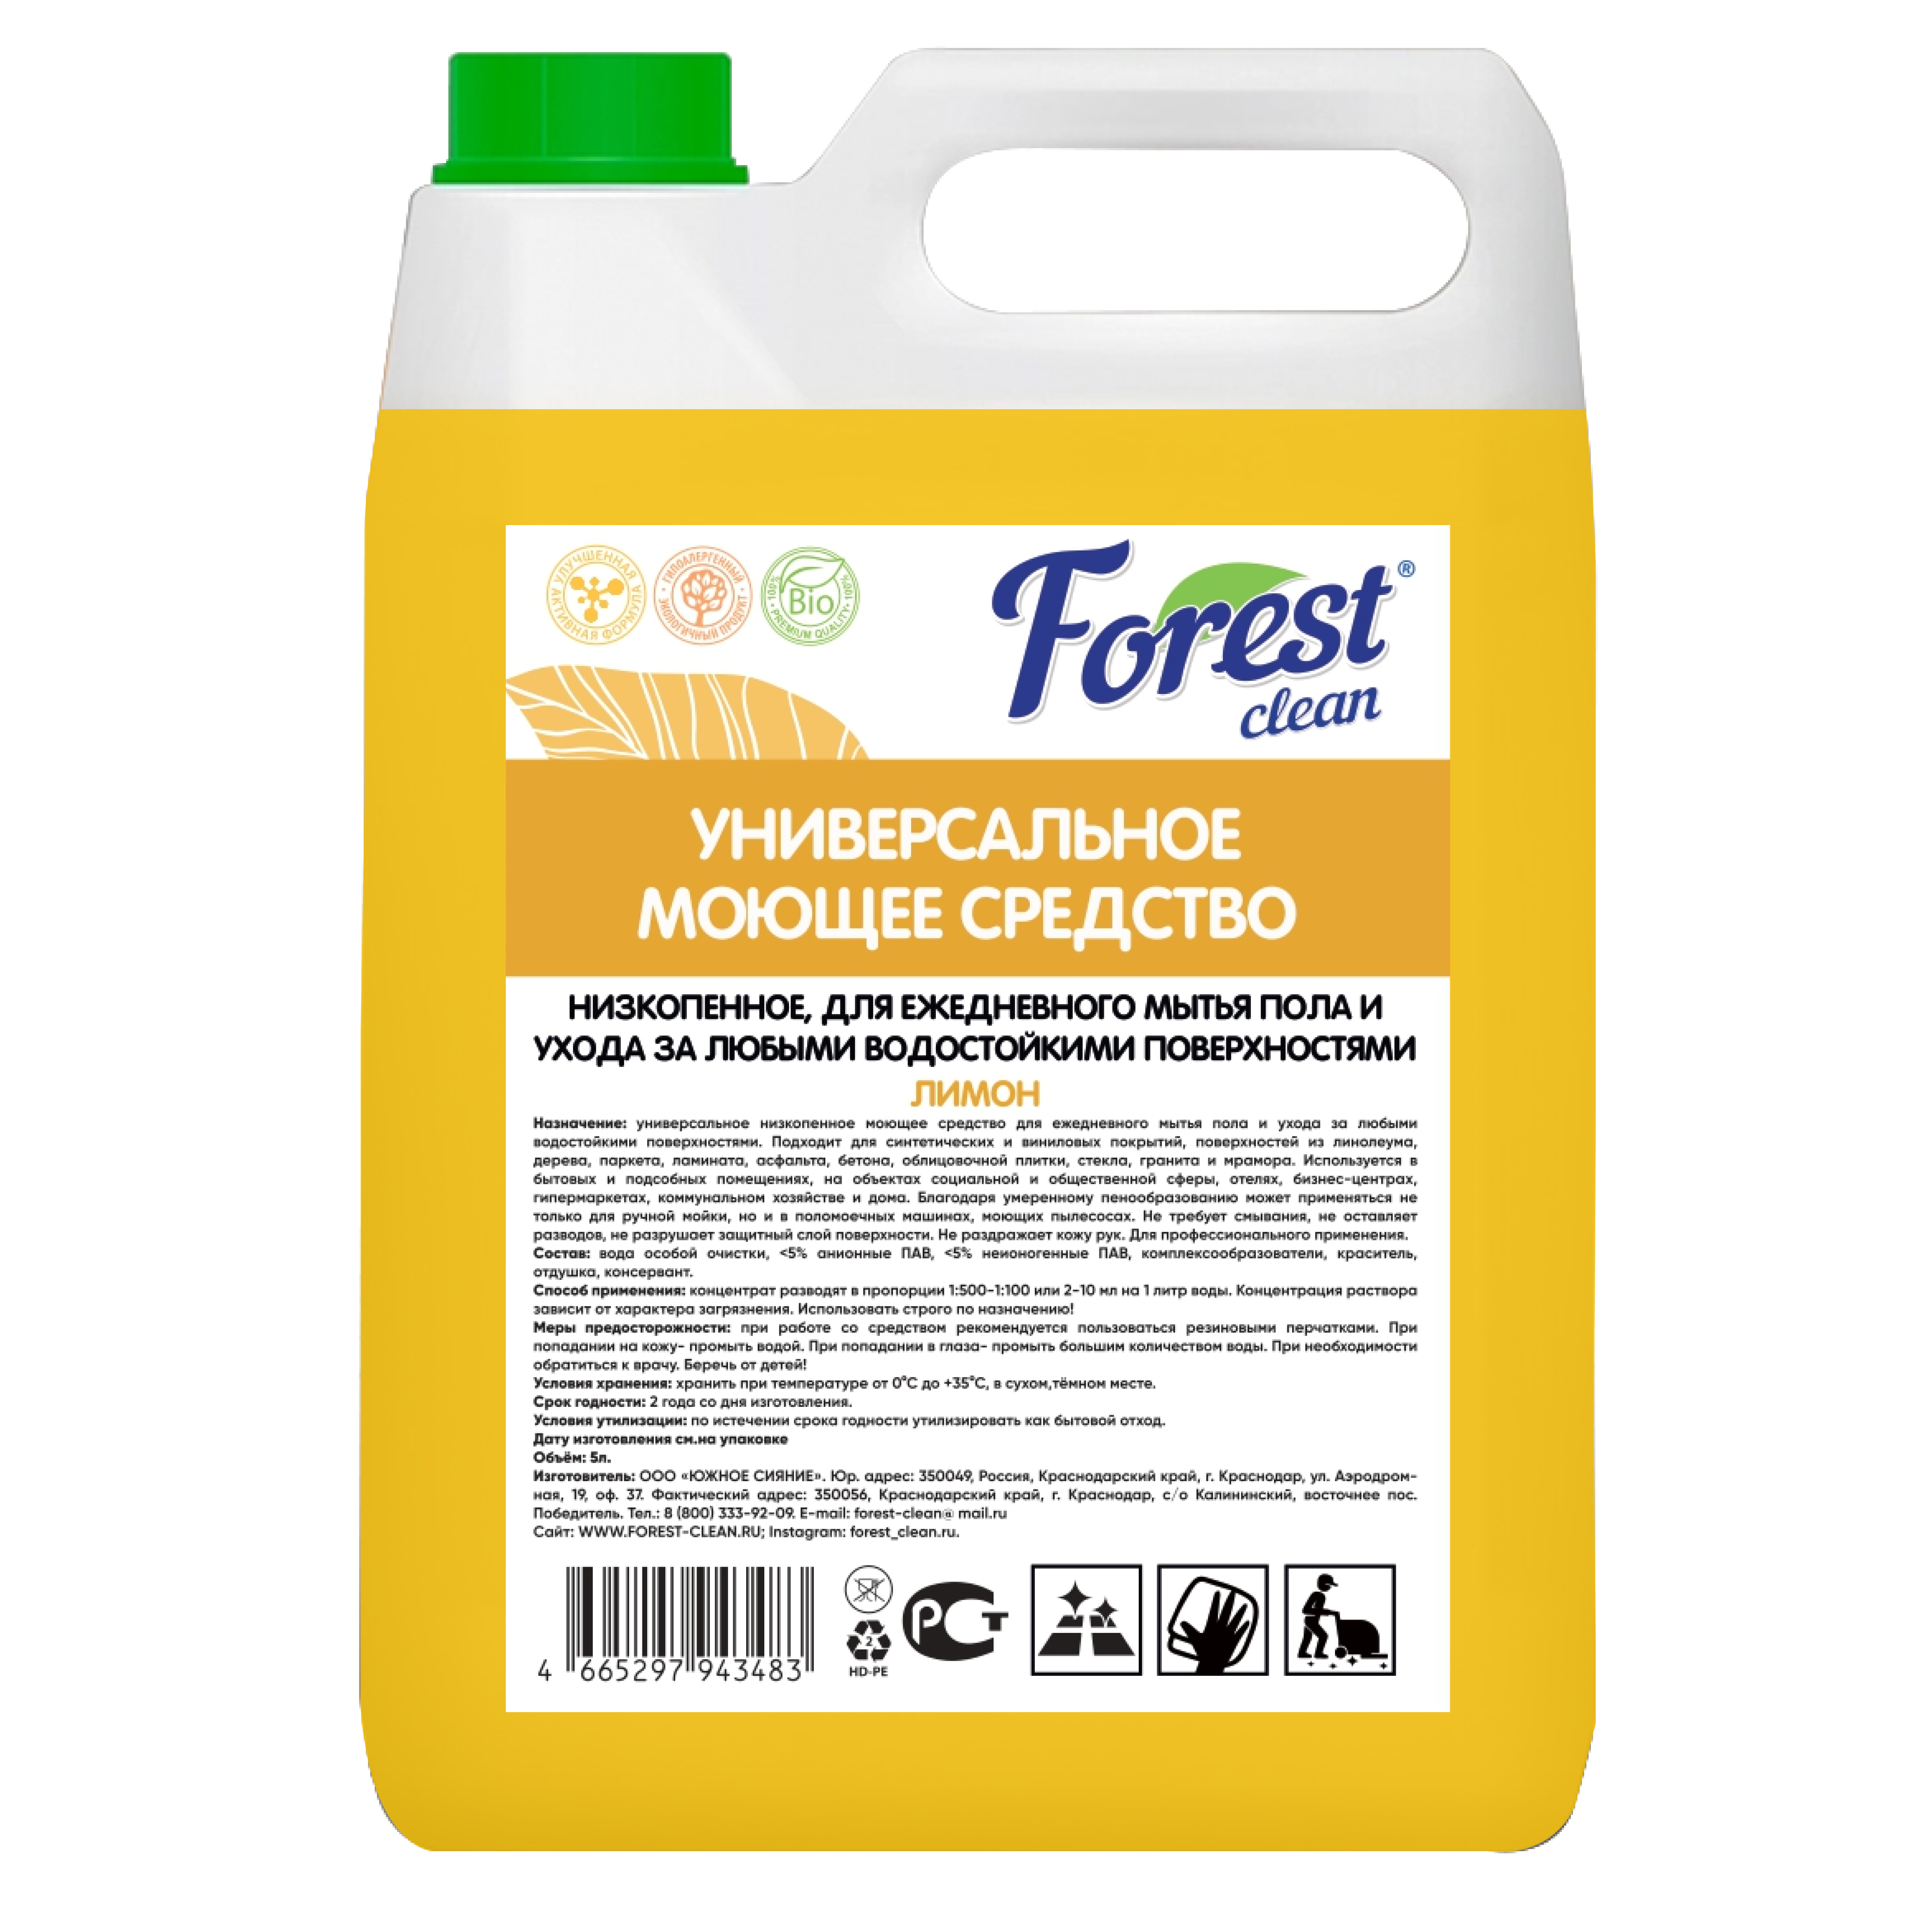 Forest Clean Универсальное моющее средство для мытья полов и всех водостойких поверхностей "Лимон" AROMA  5 л.